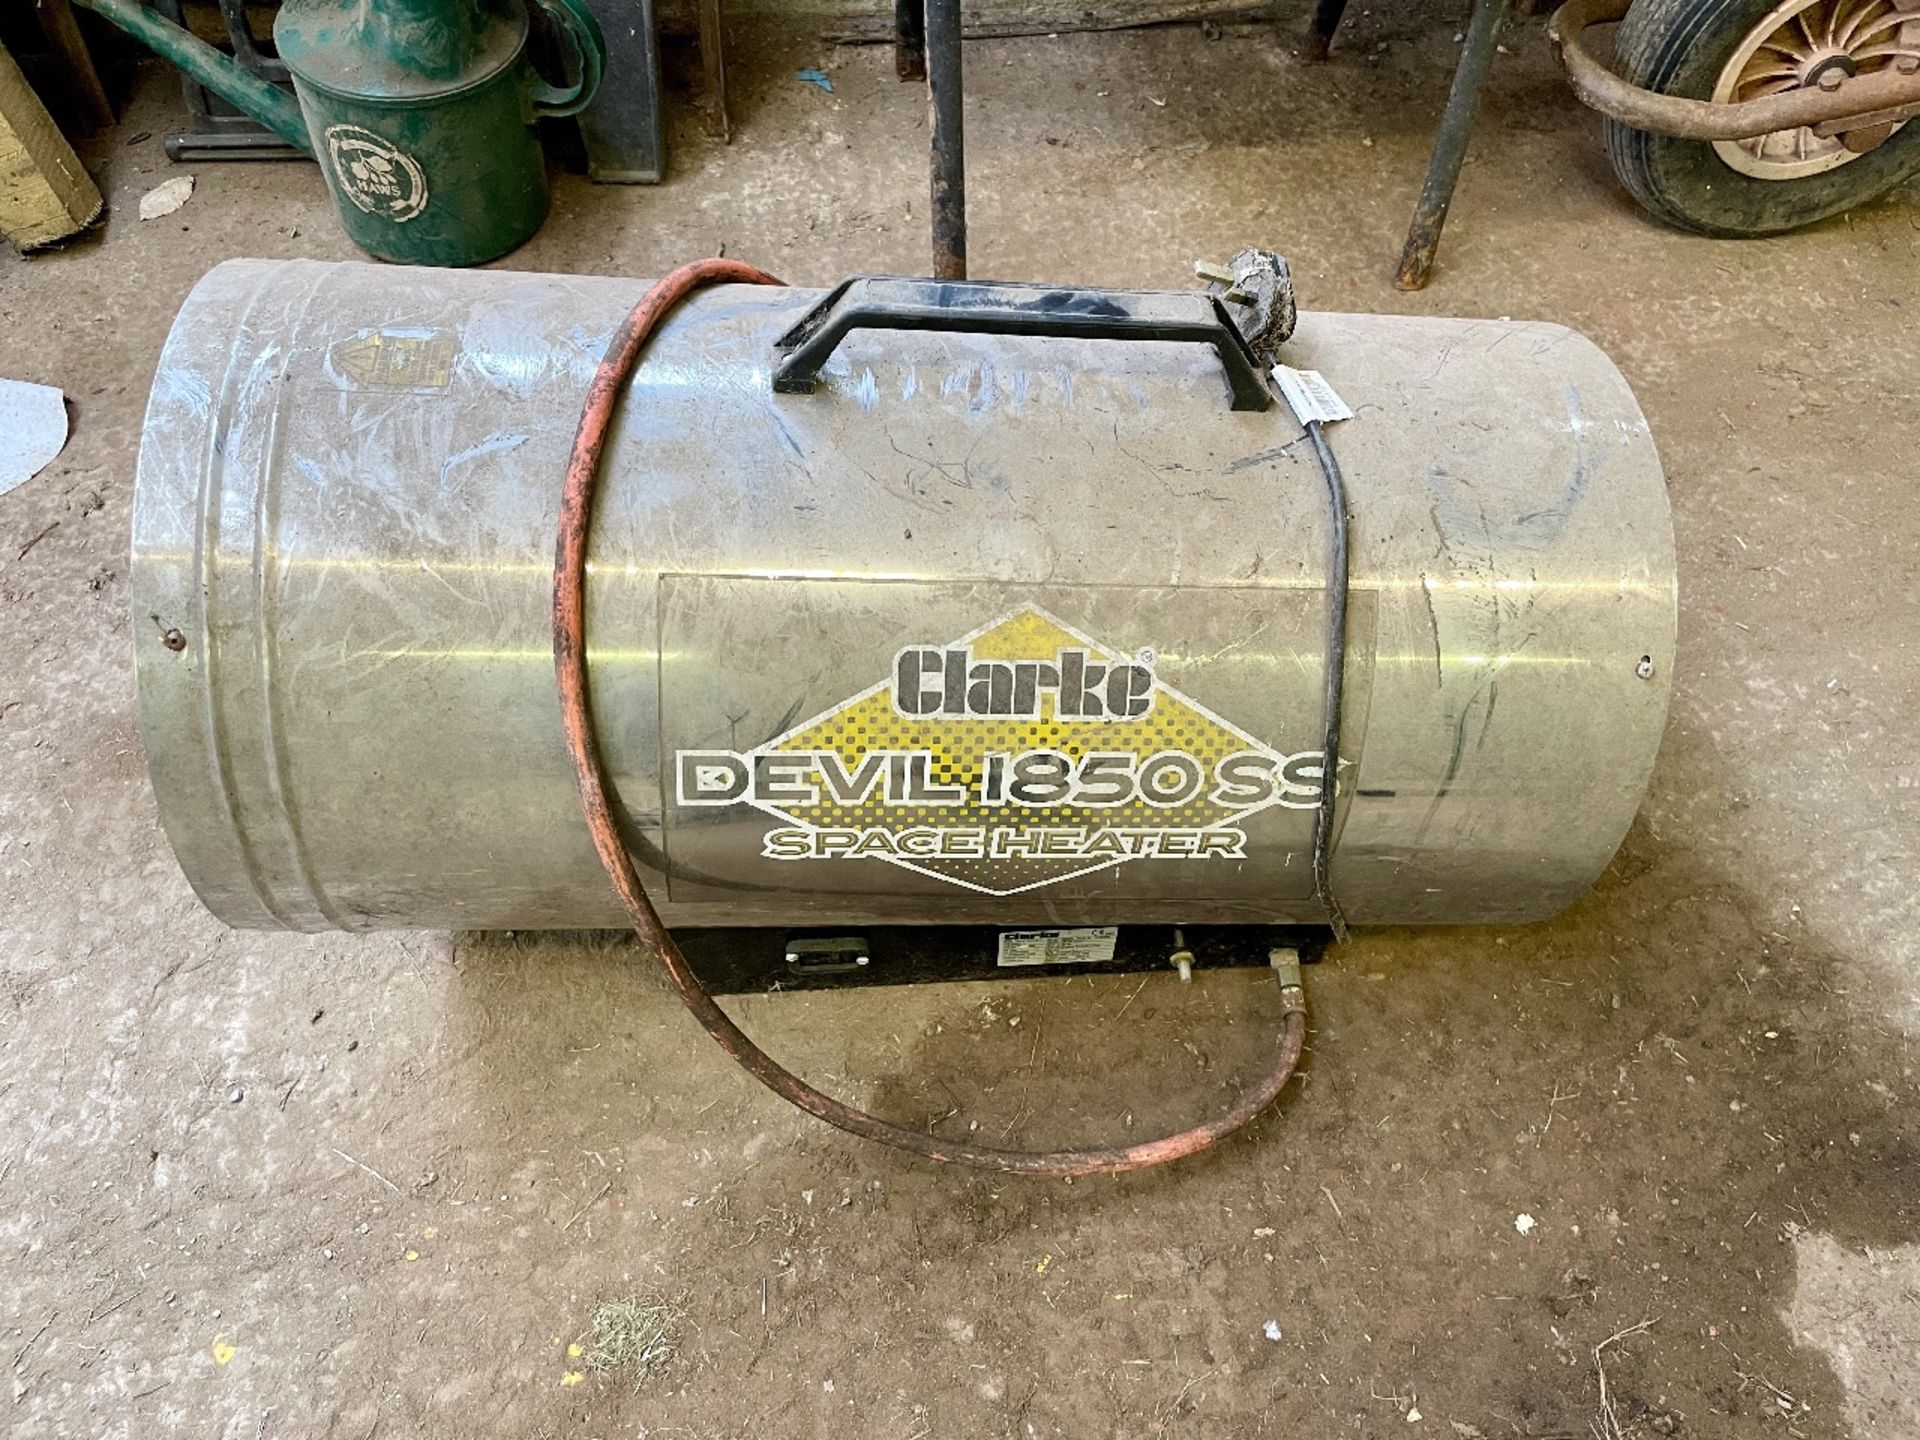 Clarke Devil 1850SS Space Heater